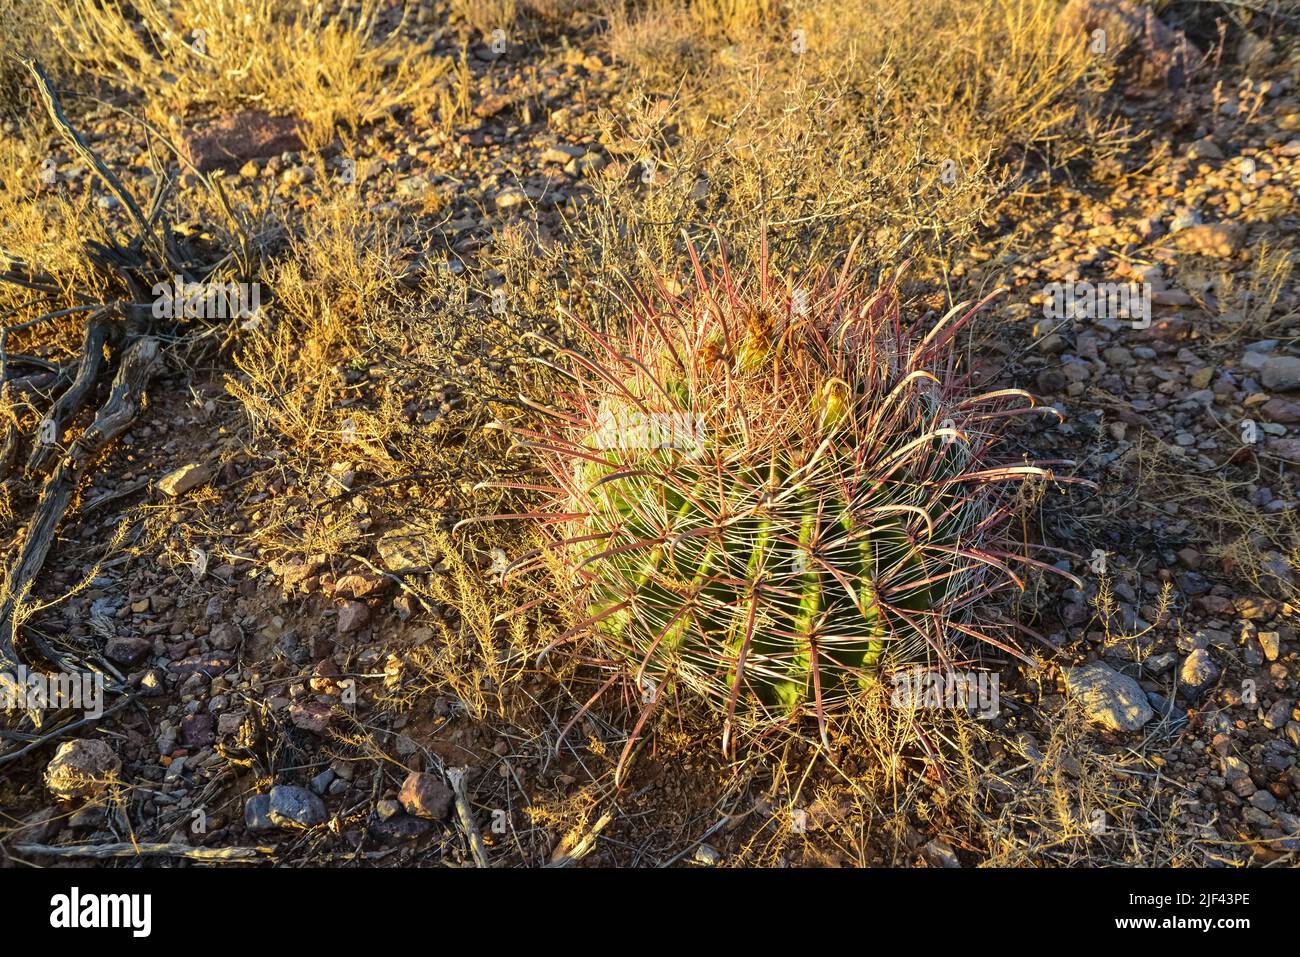 Wüstenlandschaft, kleiner Kaktus Ferocactus. Organ Mountains-Desert Peaks NM, New Mexico, USA Stockfoto